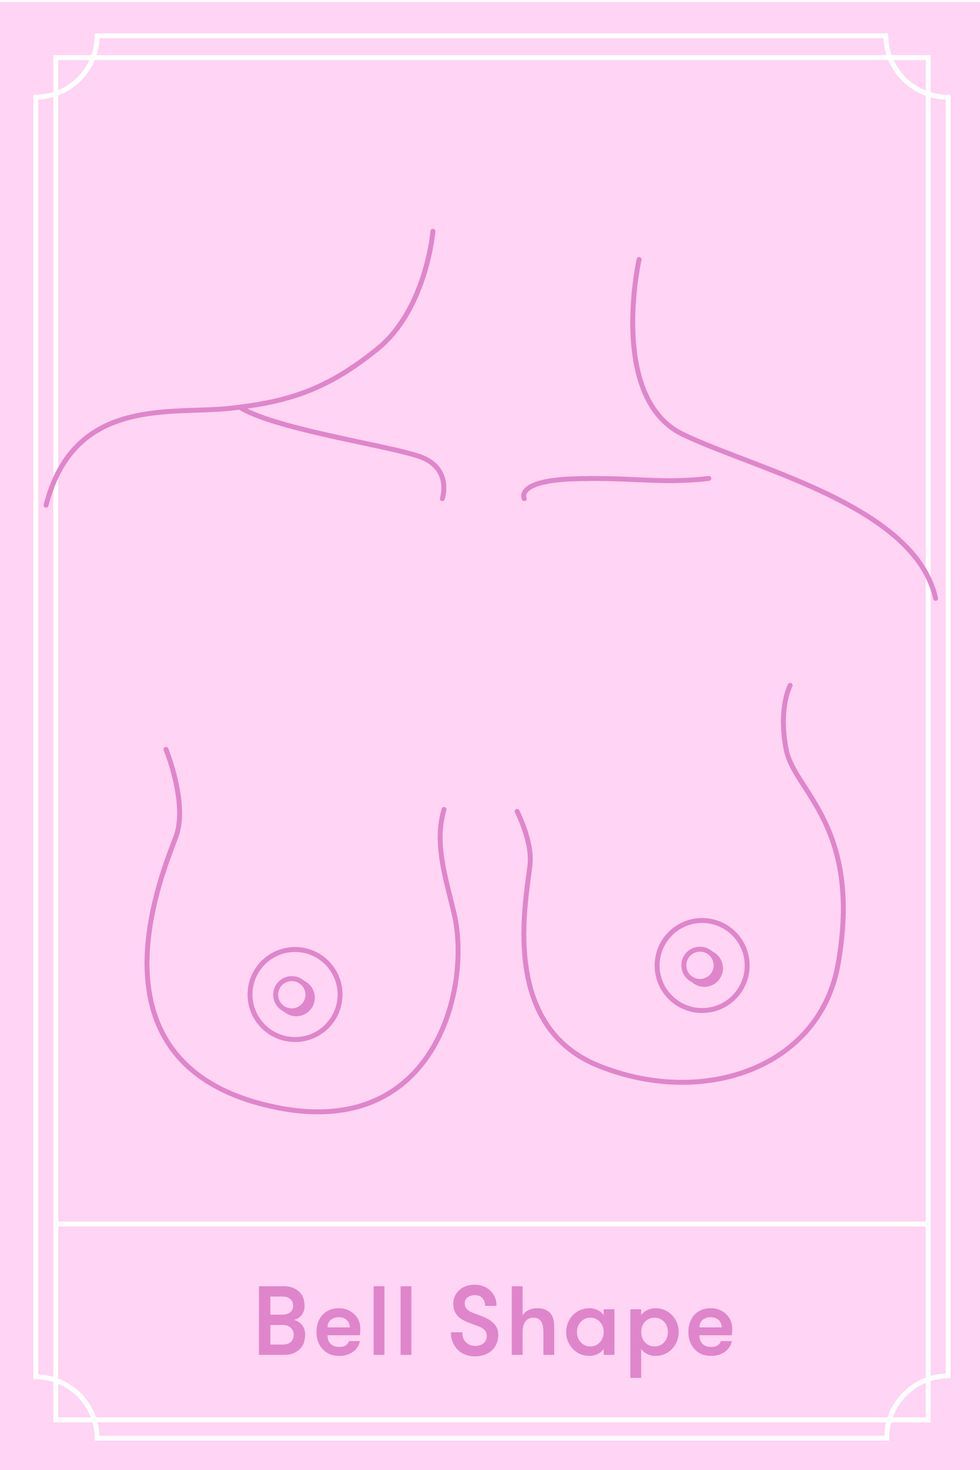 Bell breast shape